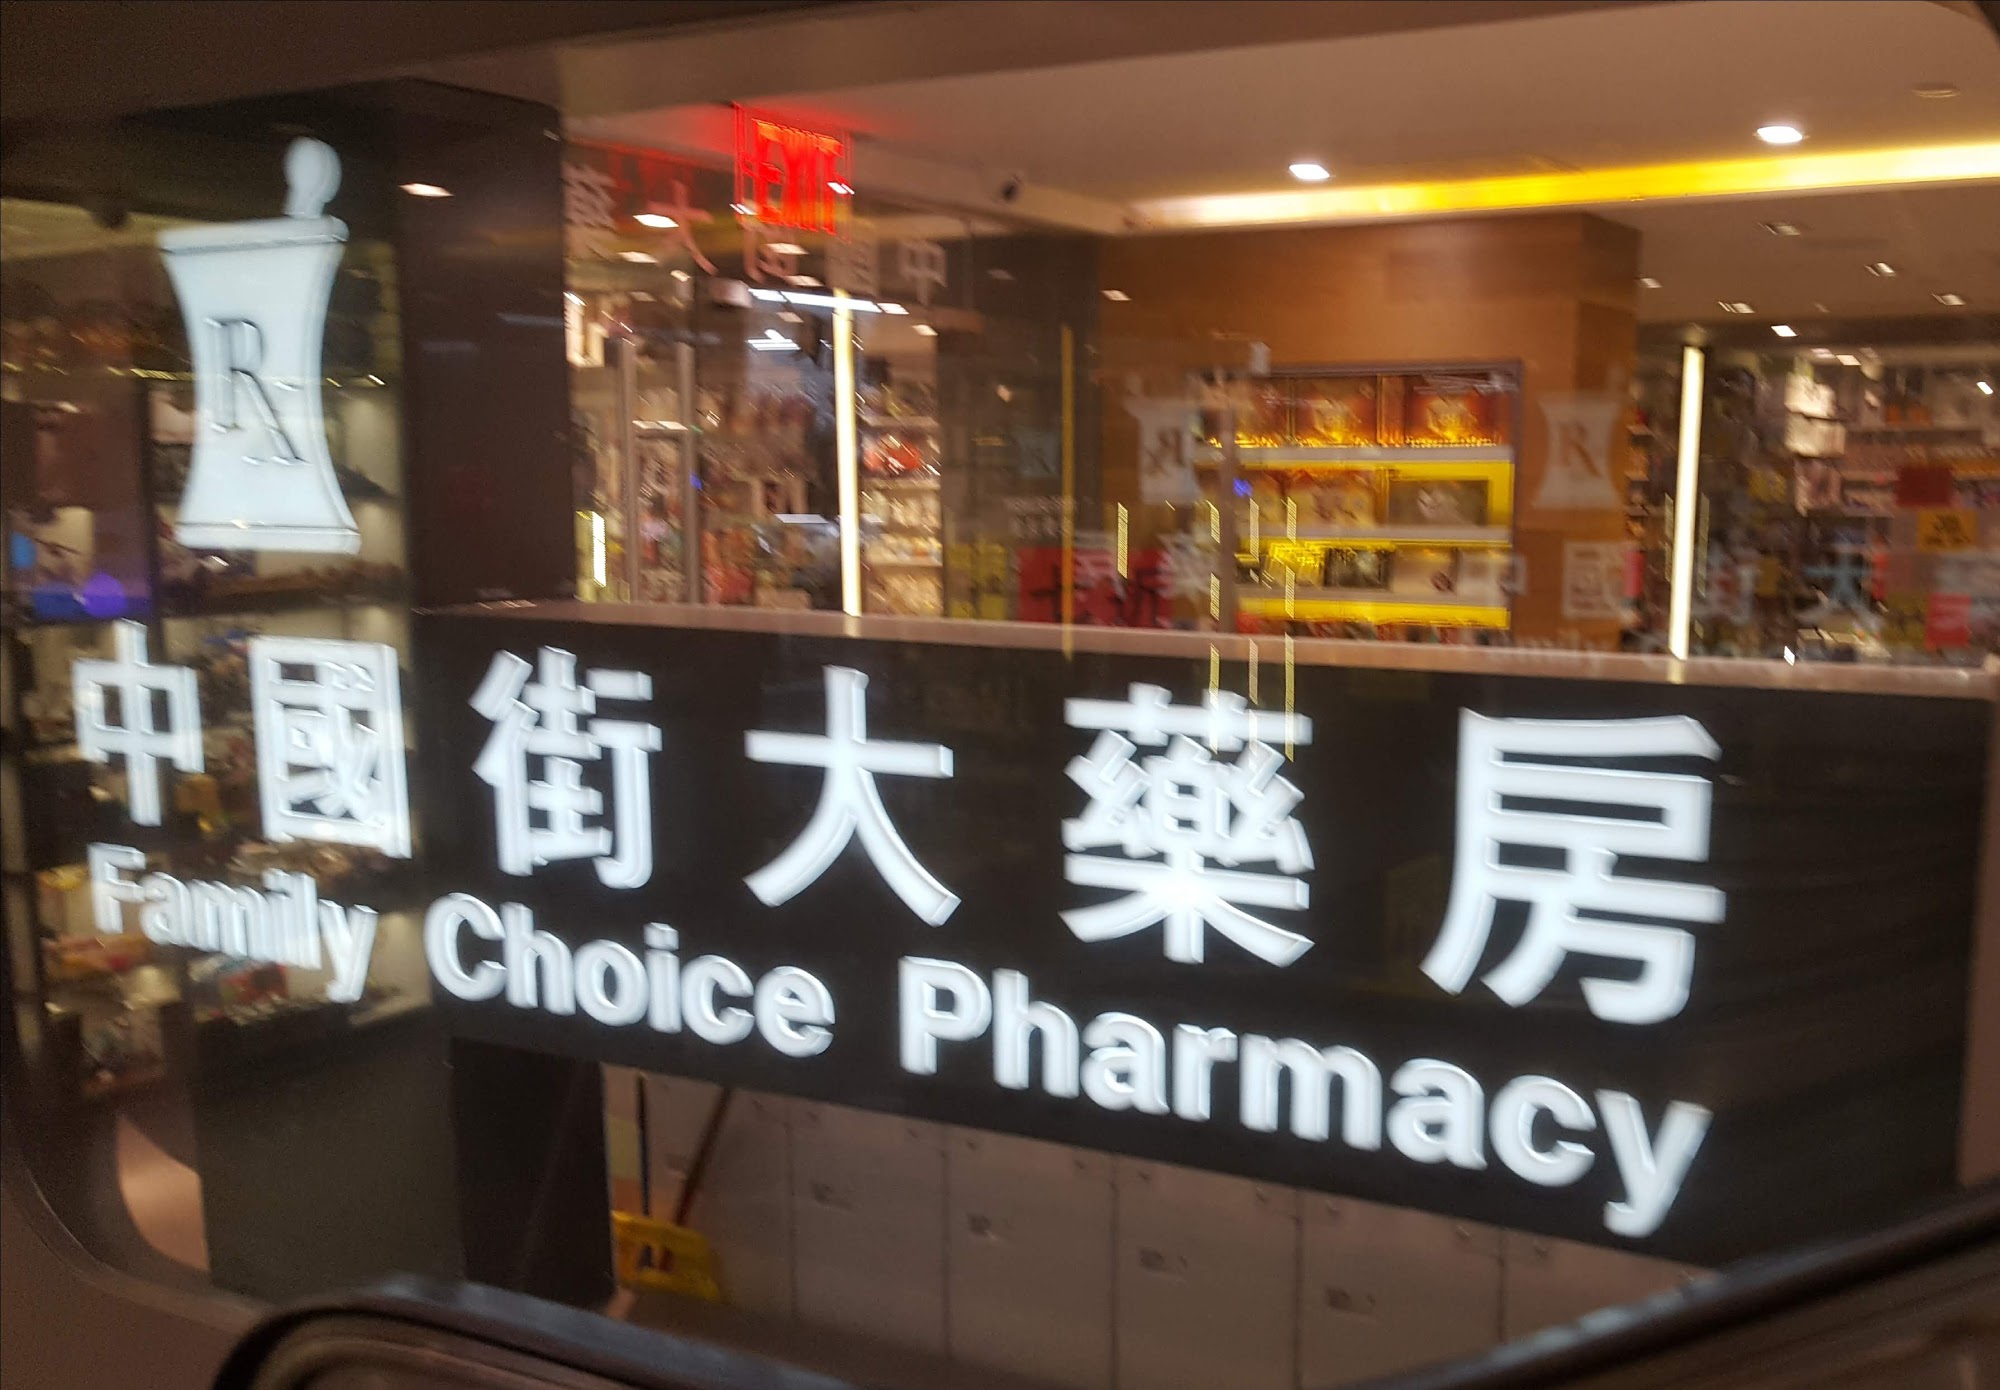 Family Choice Pharmacy